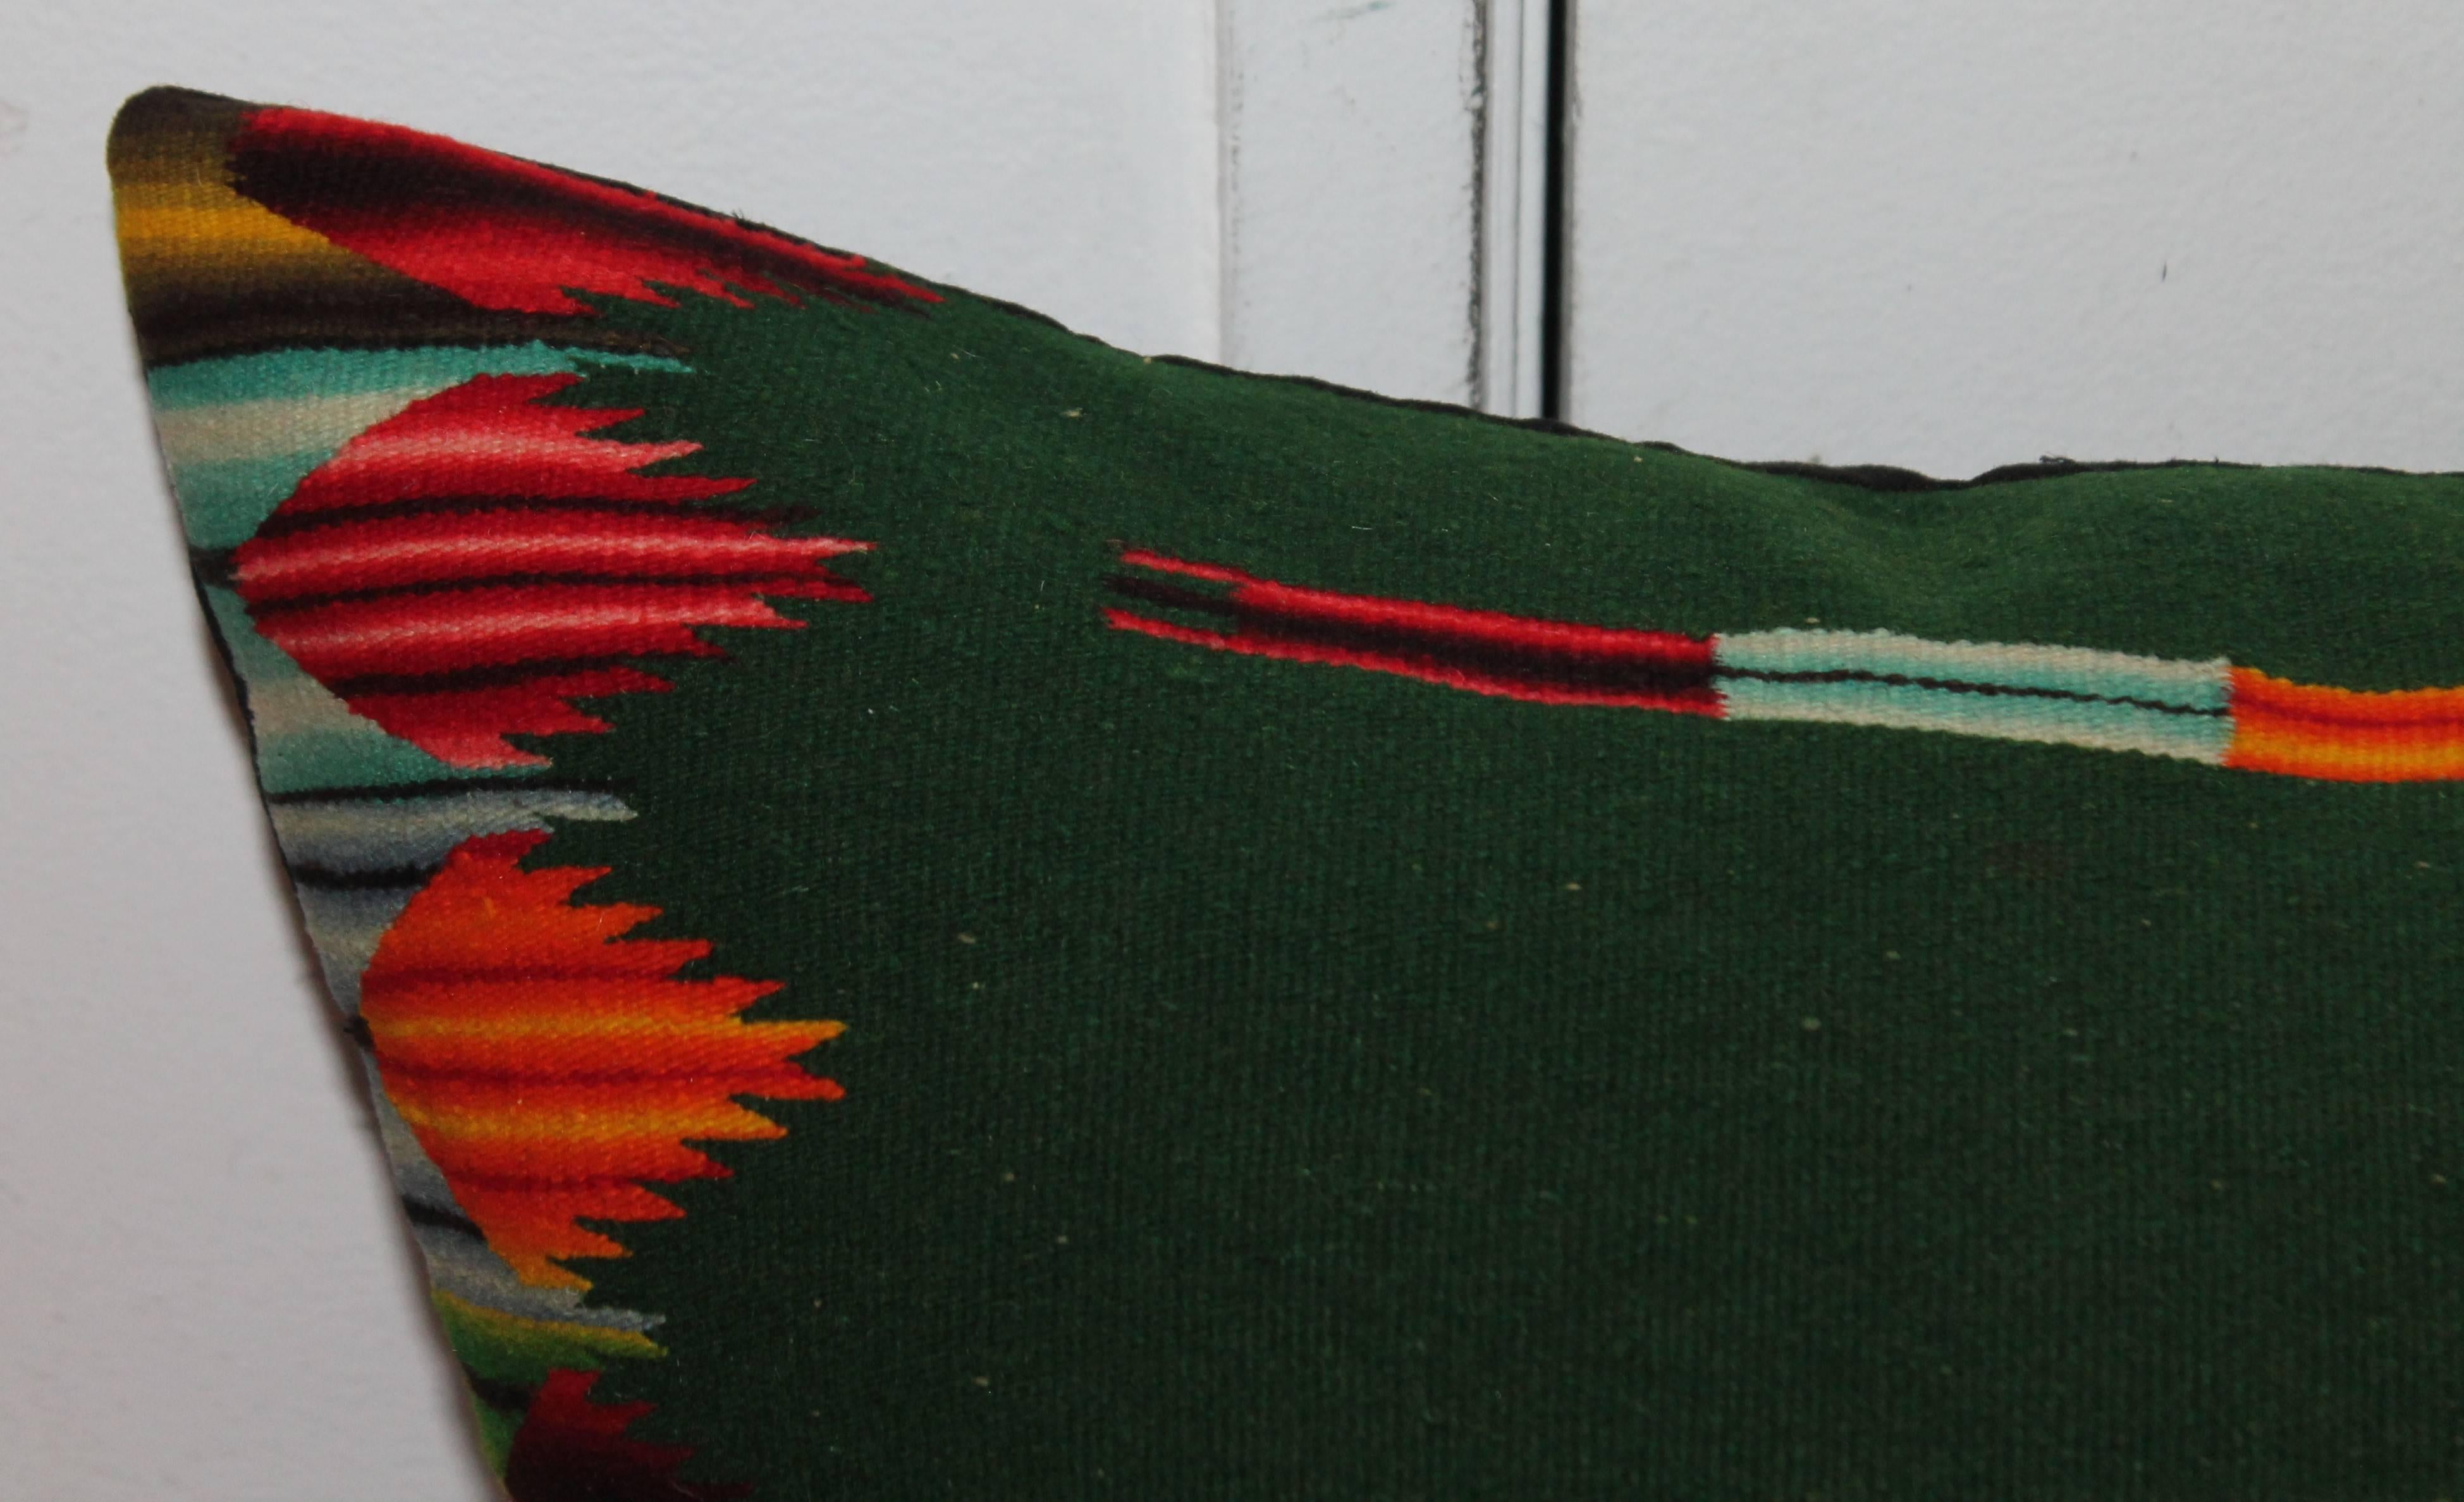 Diese handgewebte mexikanische Weberei Nackenkissen hat erstaunliche Farben und in gutem Zustand. Die Unterlage ist aus schwarzem Baumwollleinen. Die Einlage ist mit Daunen und Federn gefüllt.